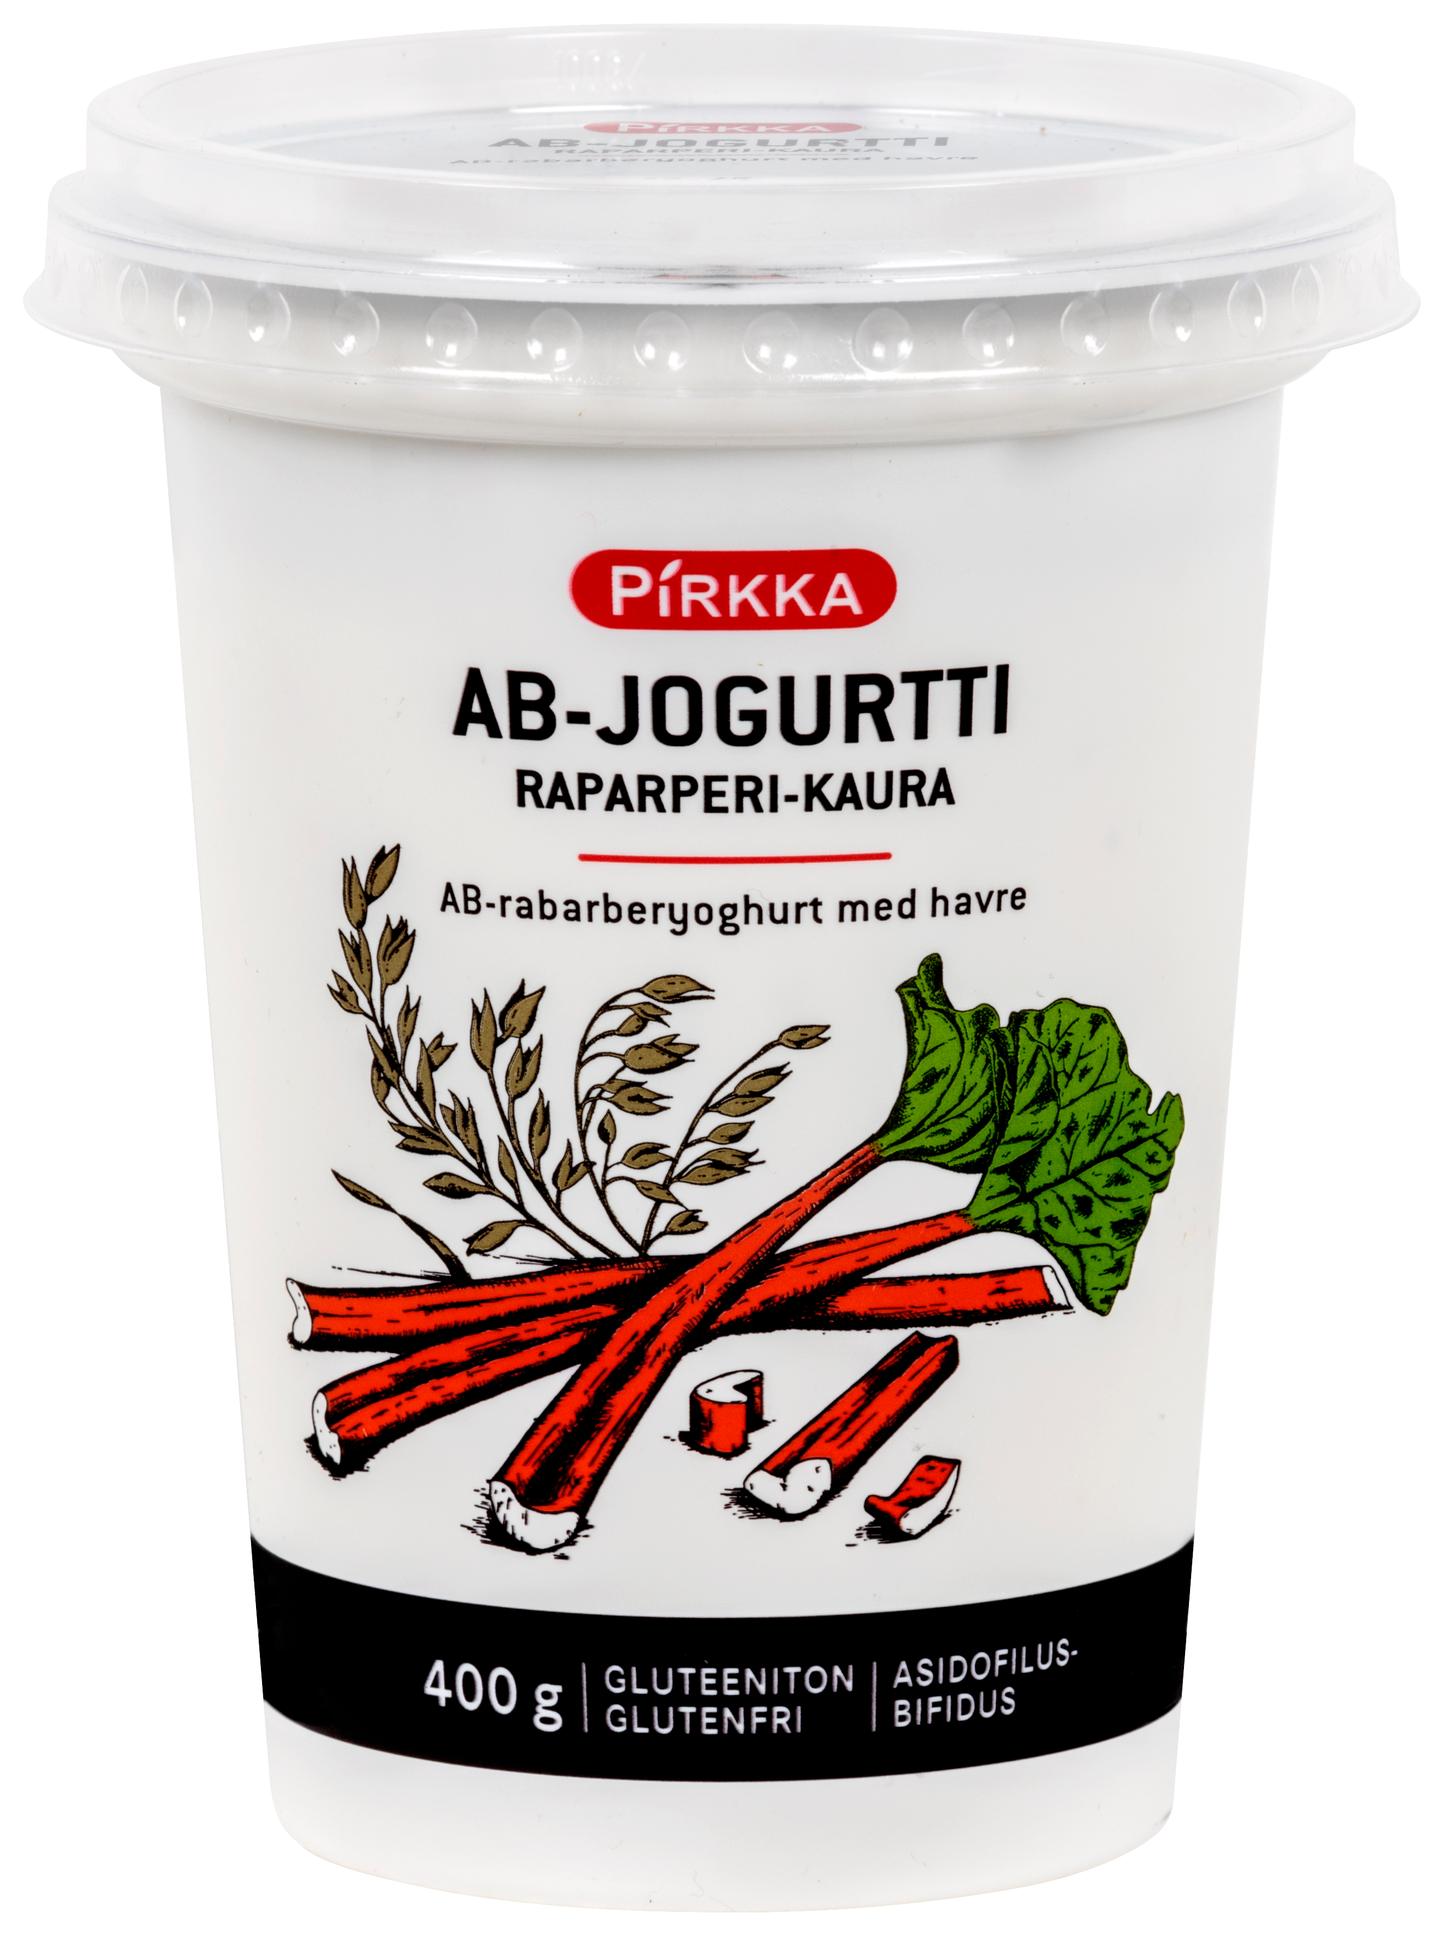 Pirkka AB-jogurtti raparperi-kaura 400g | K-Ruoka Verkkokauppa